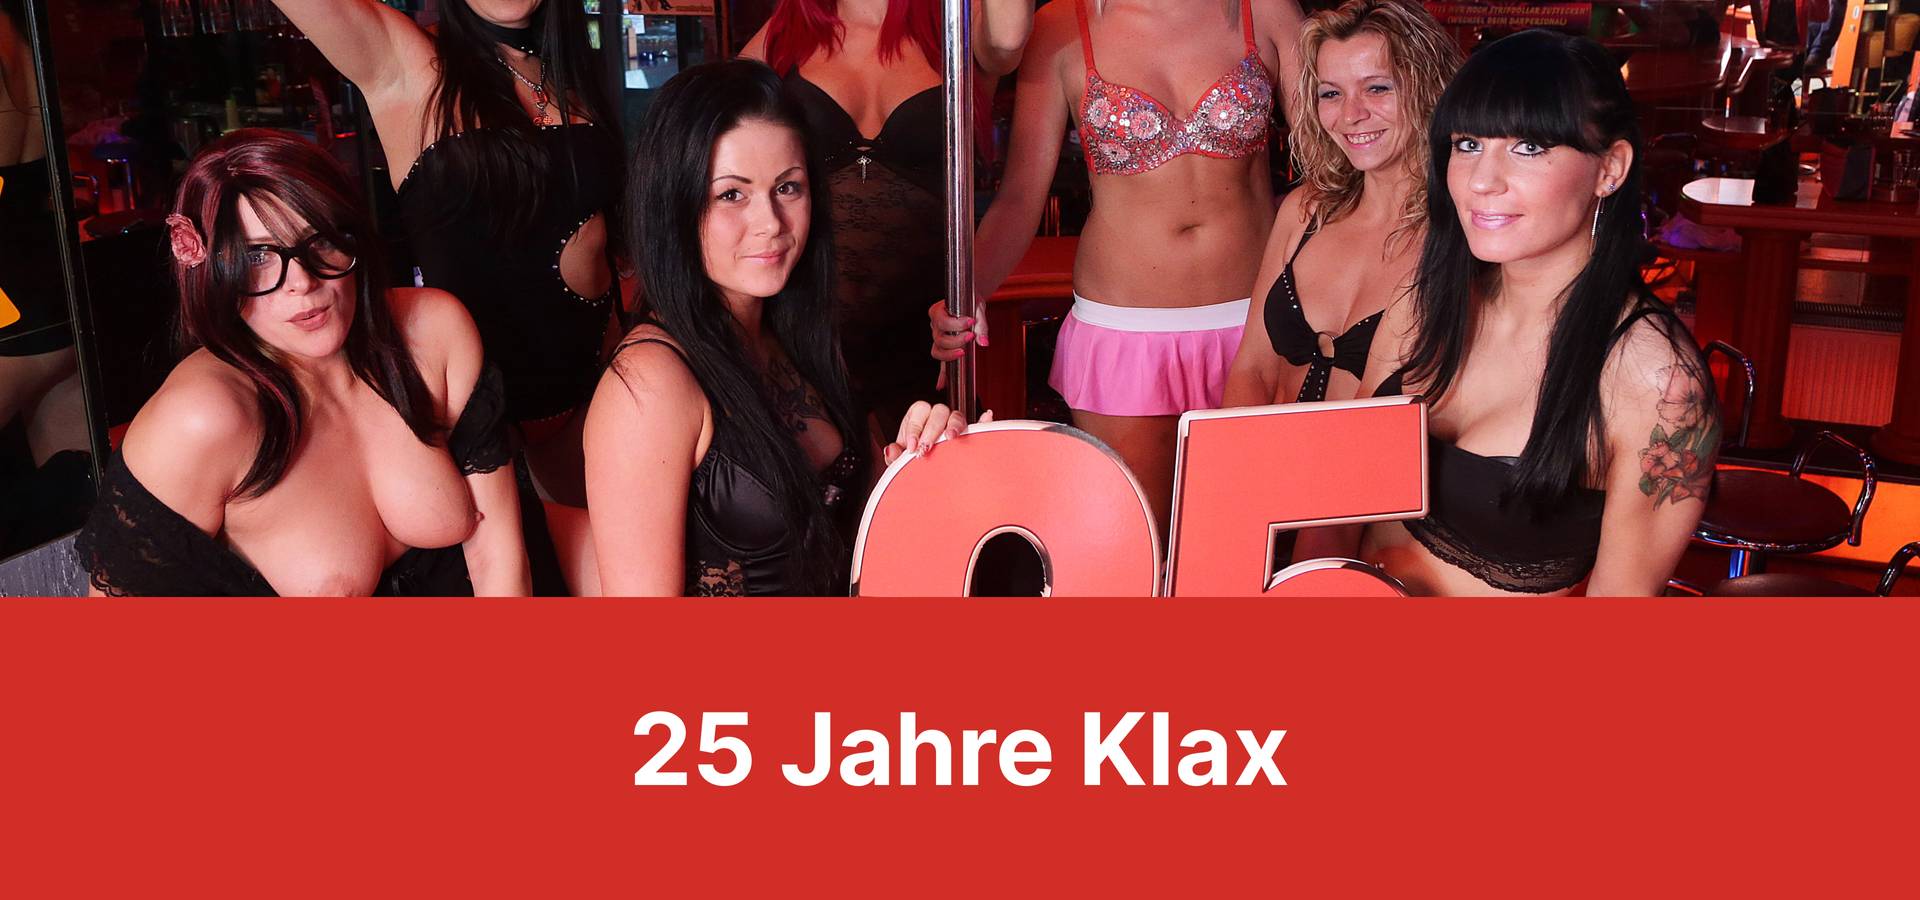 Klax Club2